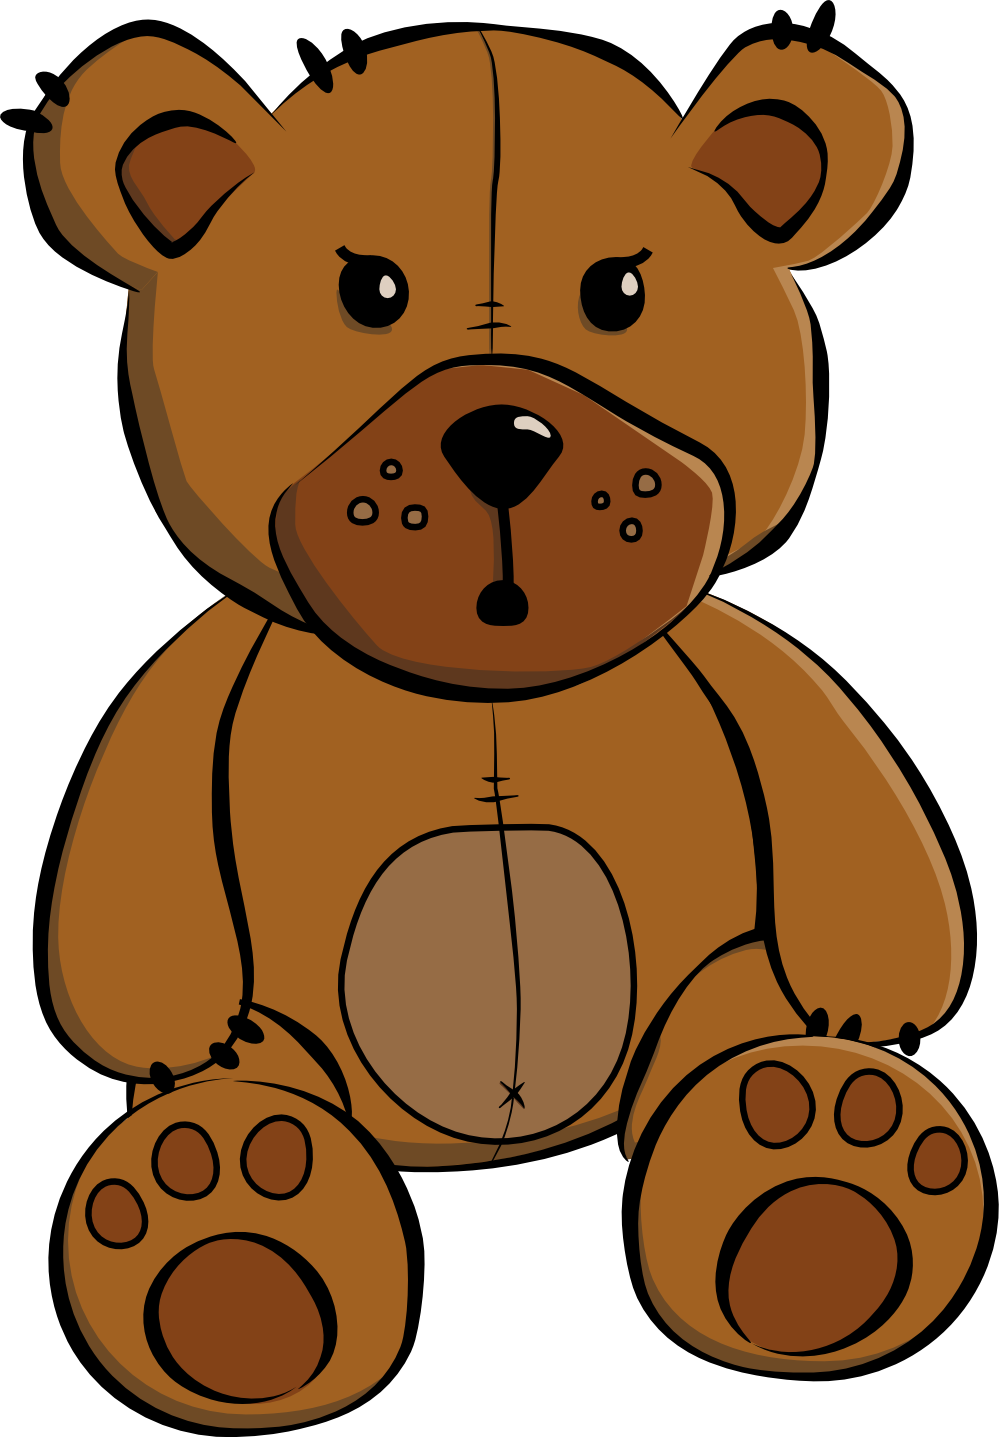 Girl Teddy Bear Clipart - ClipArt Best